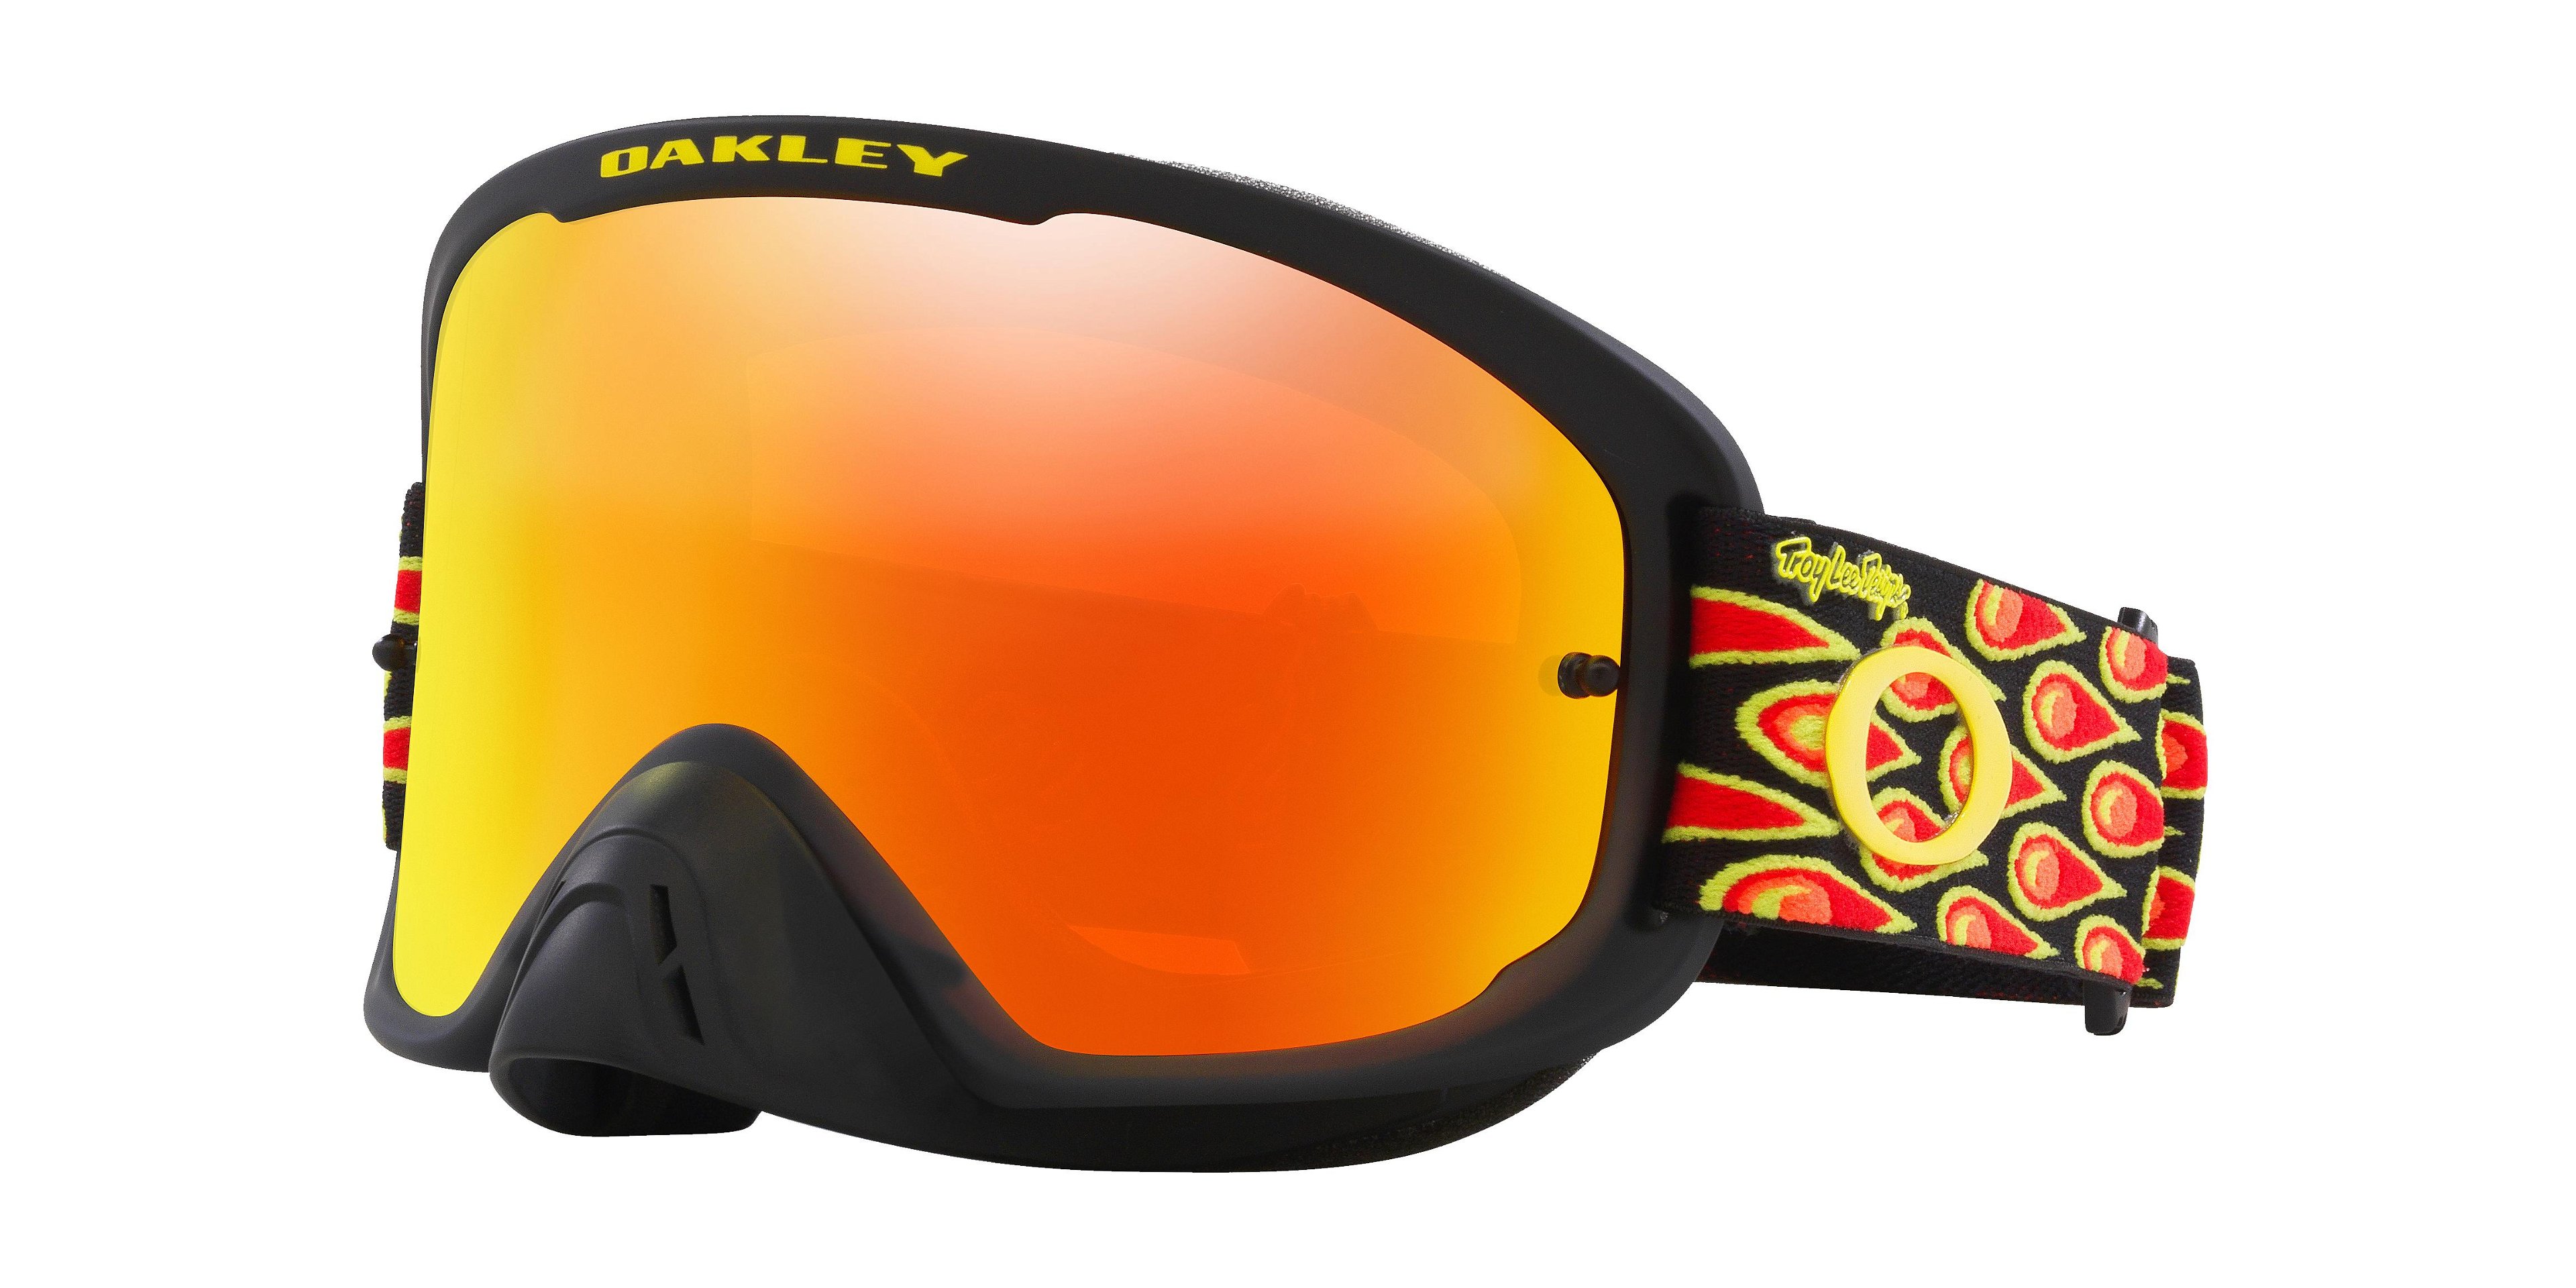 Oakley Men's O-frame® 2.0 Pro Mx Troy Lee Designs Series Goggles by OAKLEY